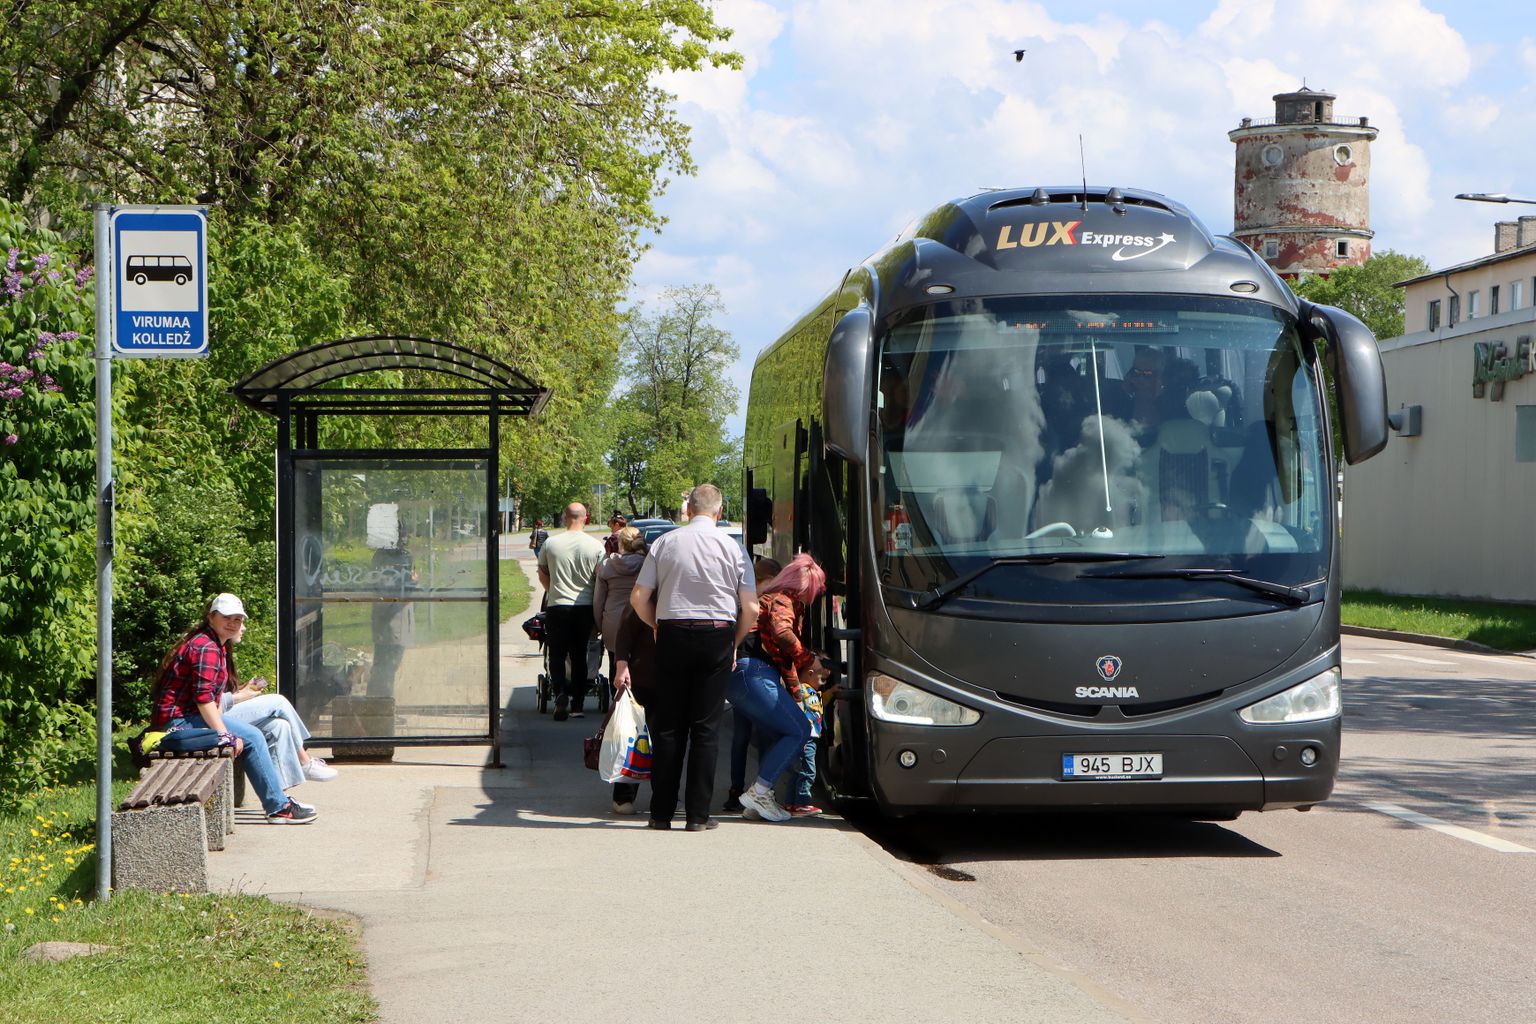 Lux Expressi bussid peatuvad juba ligi pool aastat Virumaa kolledži ja endise apteegi peatuses, kus sõitjatel tuleb bussi oodata ebamugavates tingimustes.